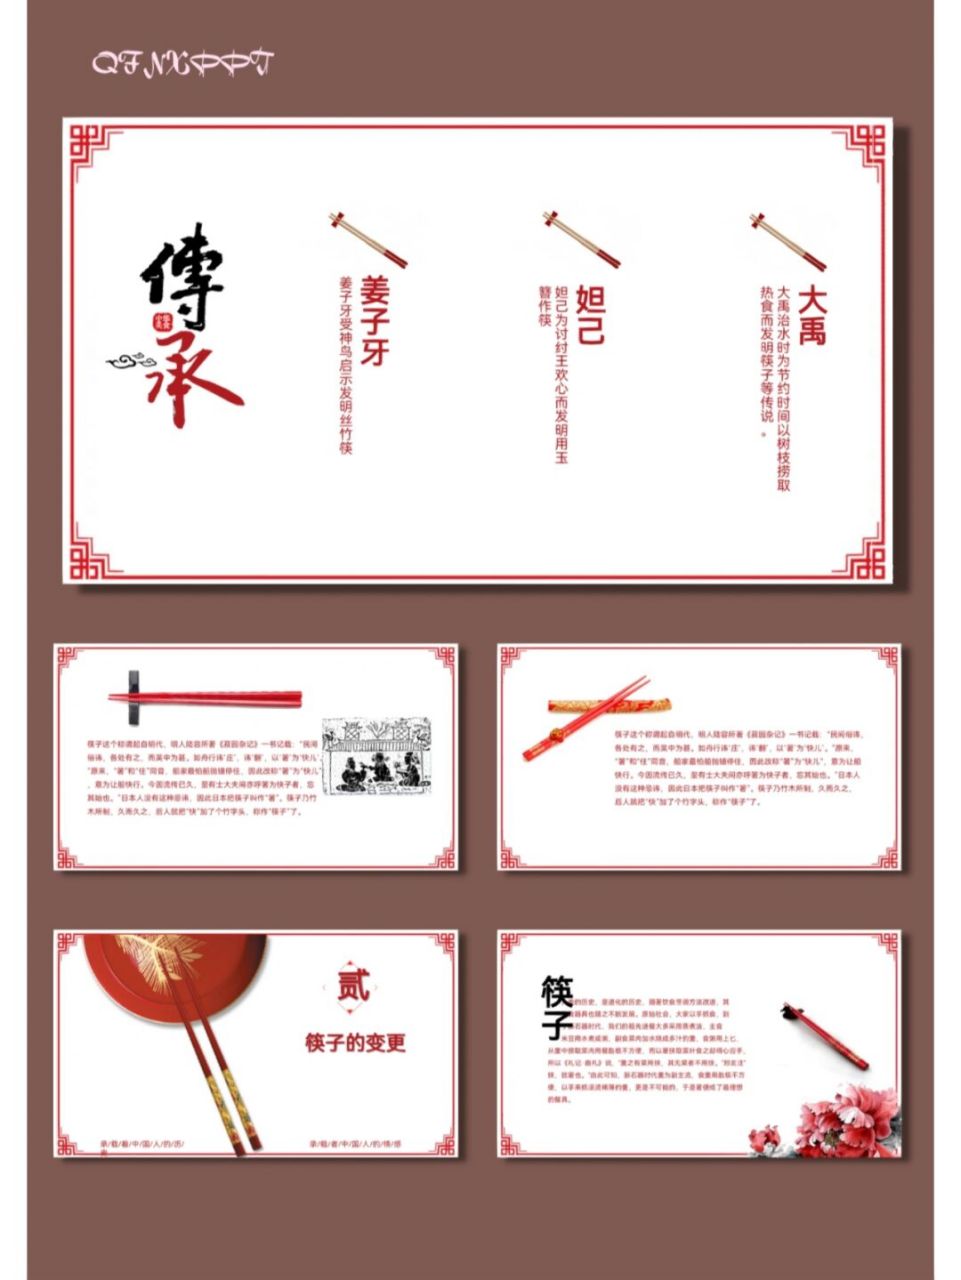 筷子中国传统文化饮食文化ppt模板【555】 96共21页,可编辑修改